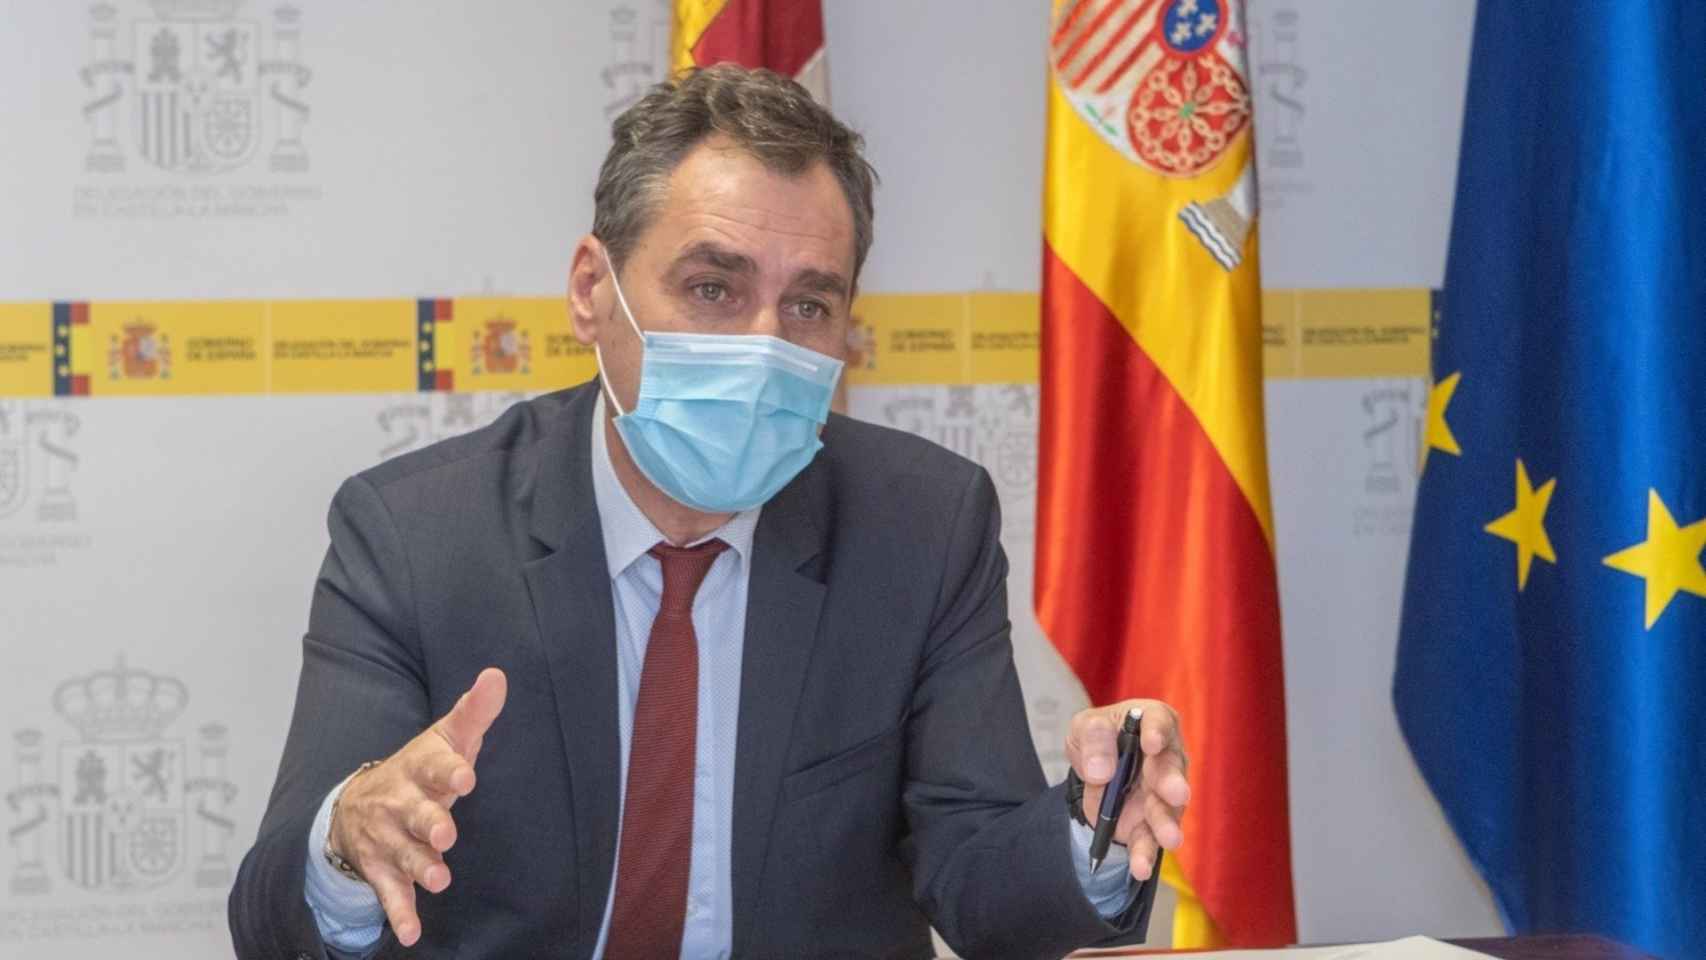 Francisco Tierraseca, delegado del Gobierno de España en Castilla-La Mancha